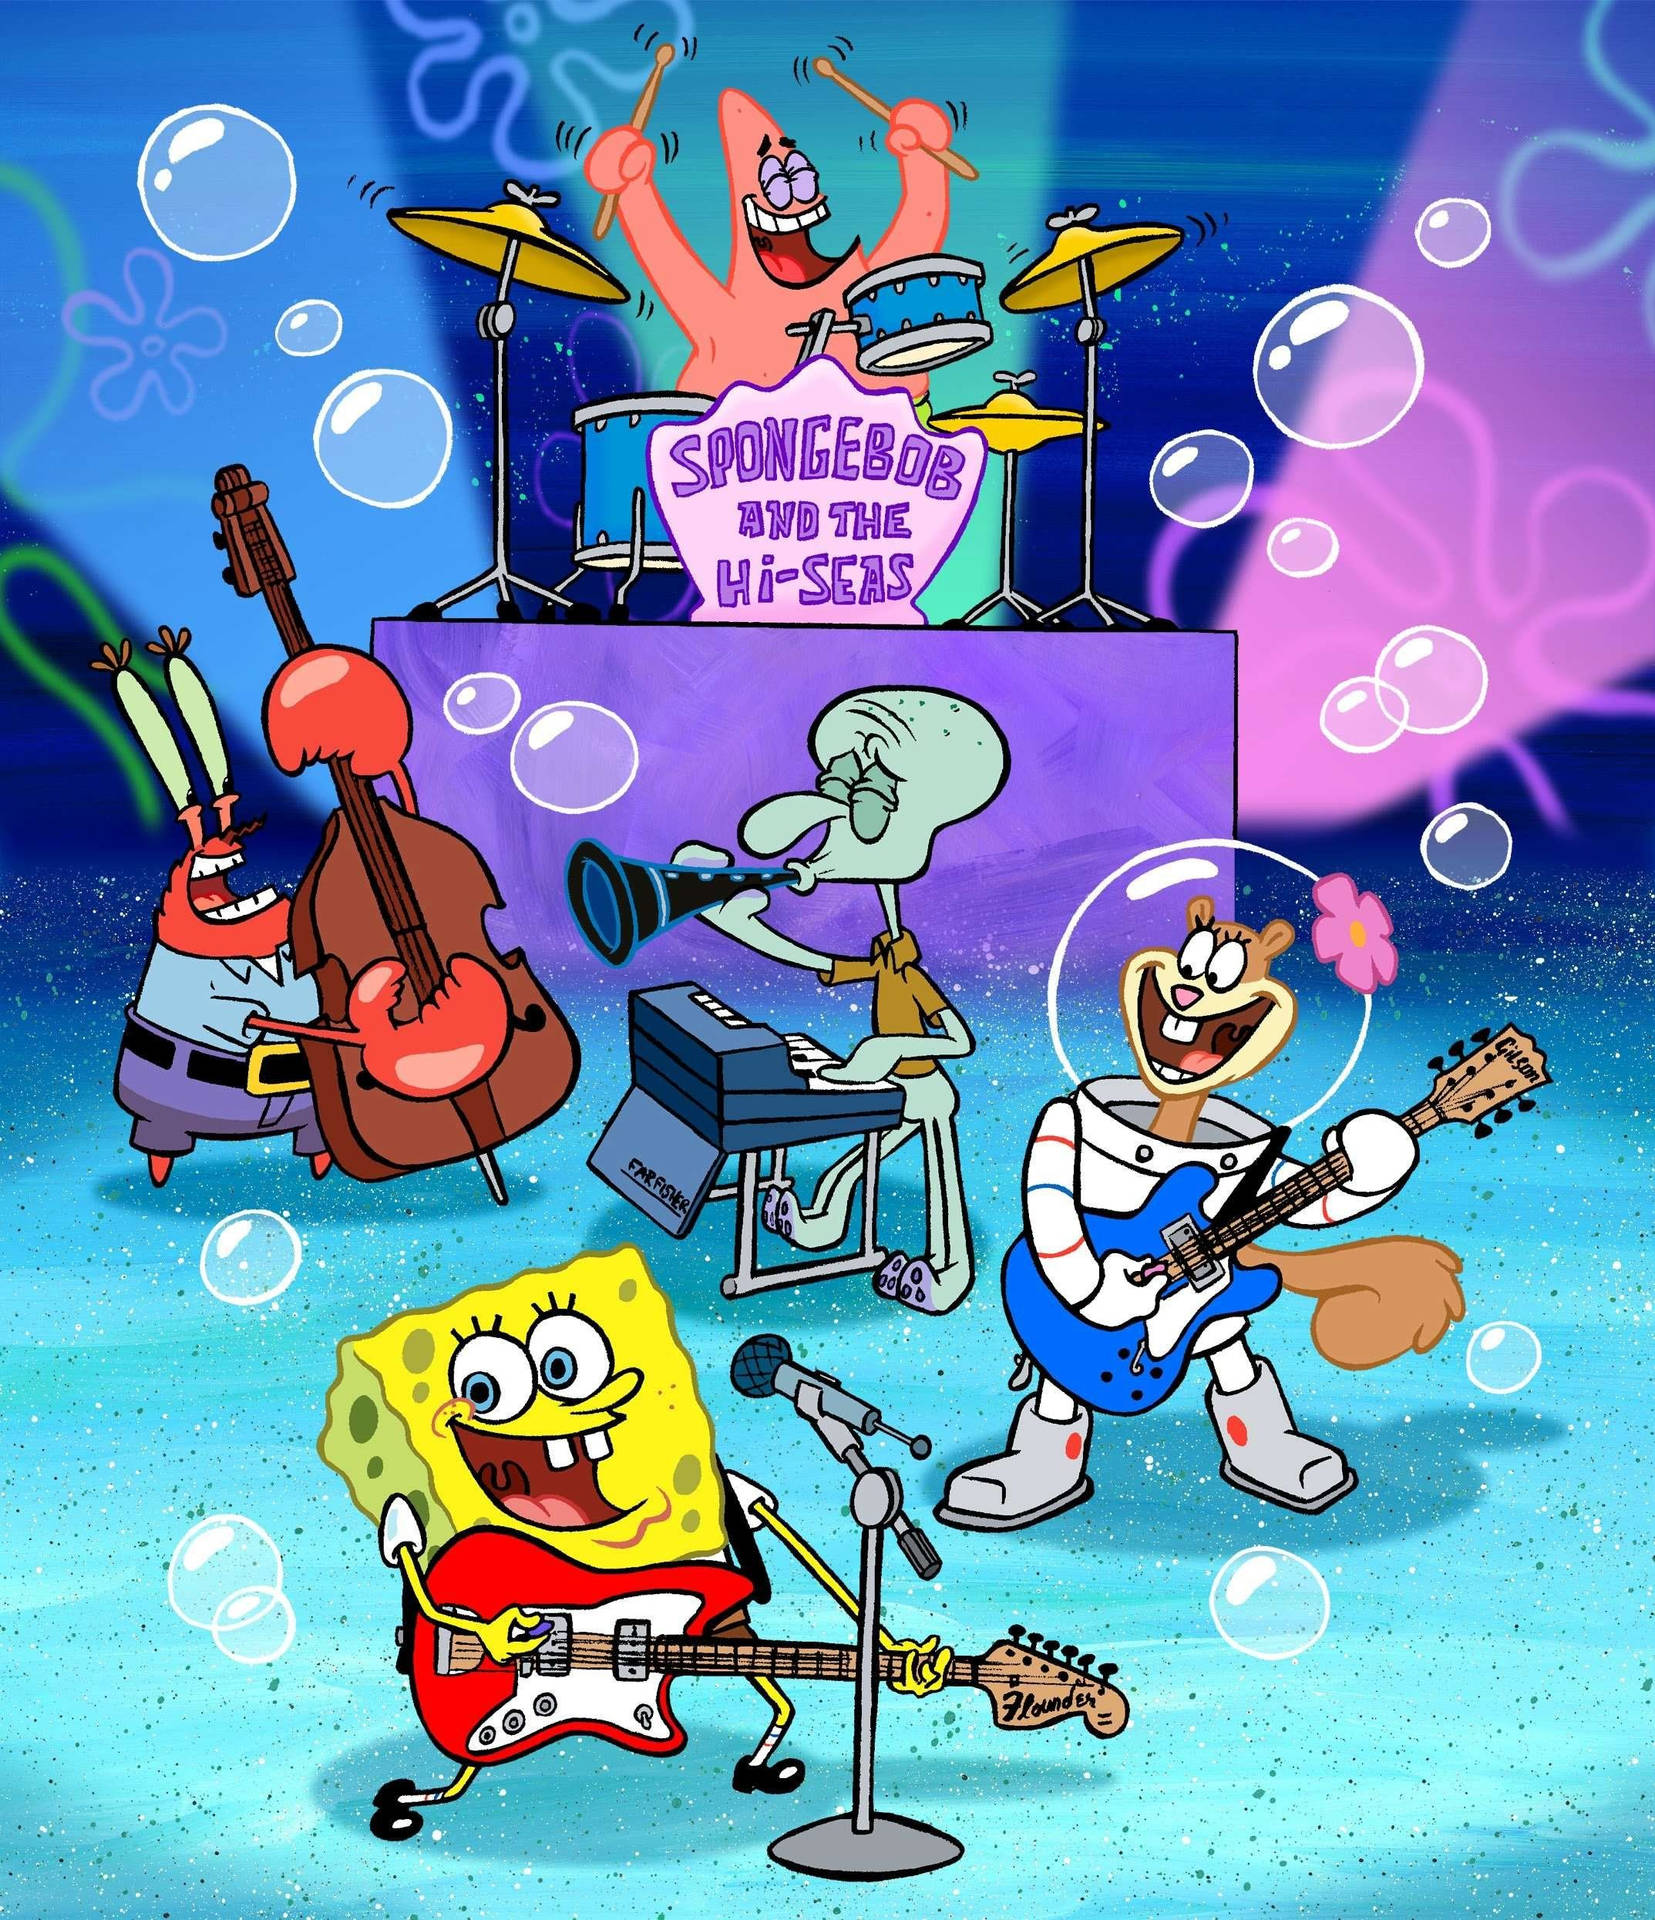 Sötspongebob Hi-havskonsert. Wallpaper